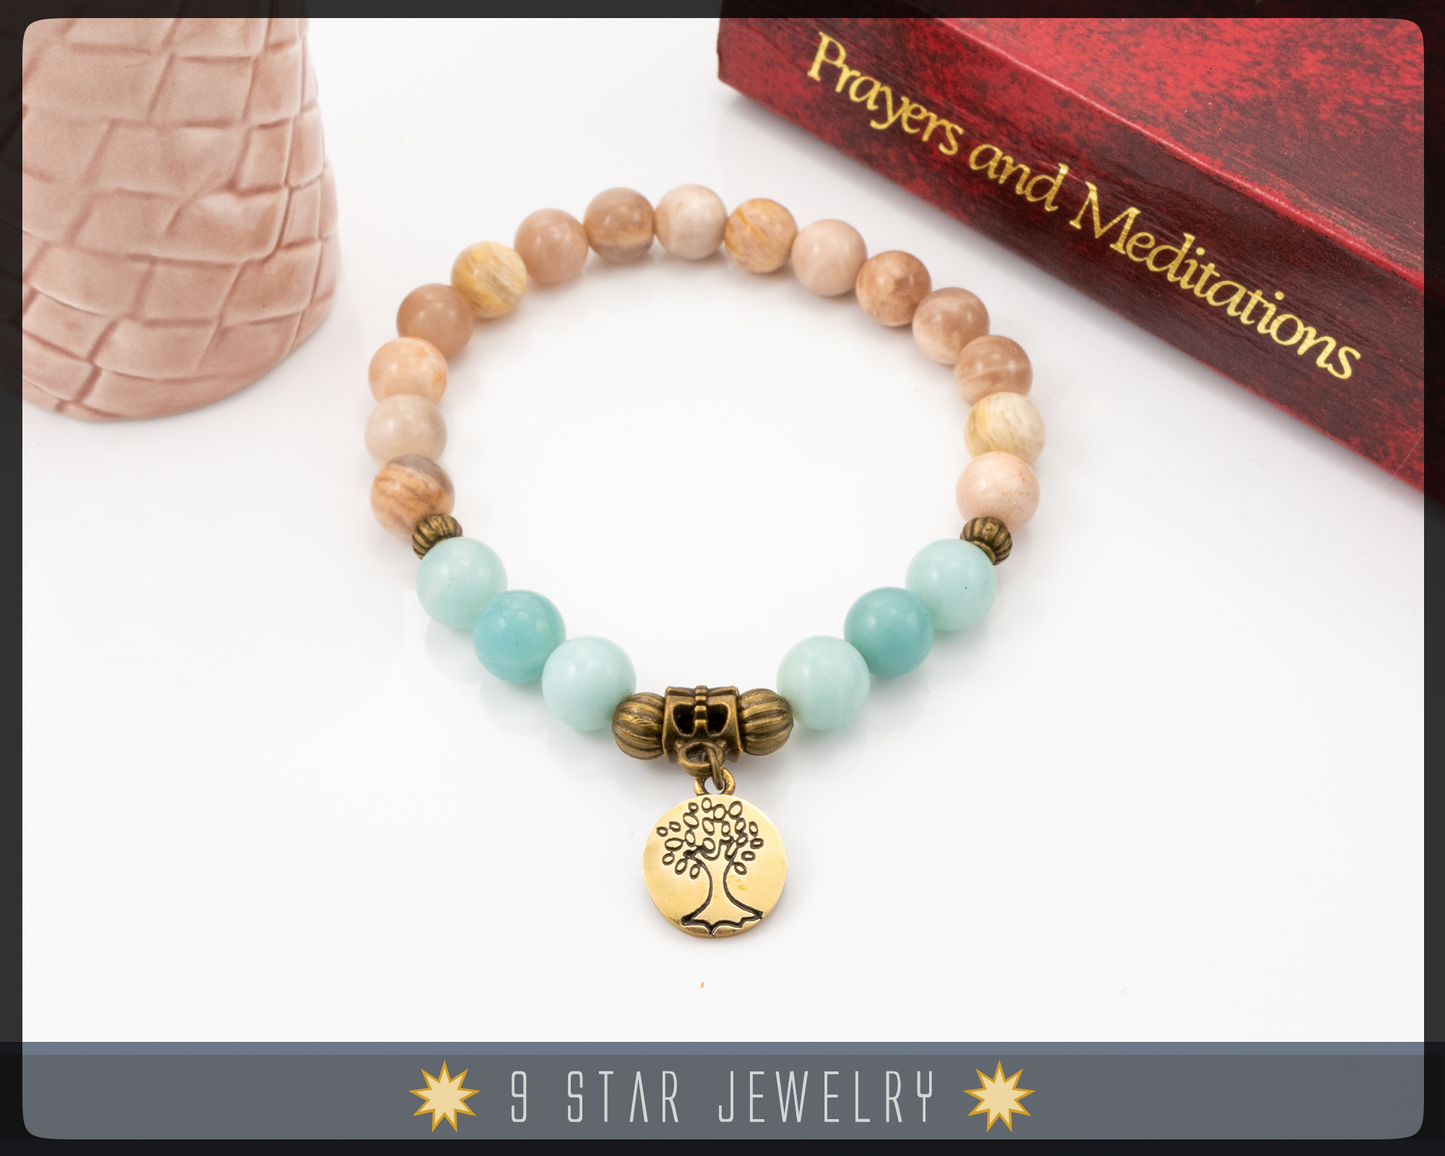 Sunstone & Amazonite Bracelet with Baha'i ringstone symbol "Sabira"